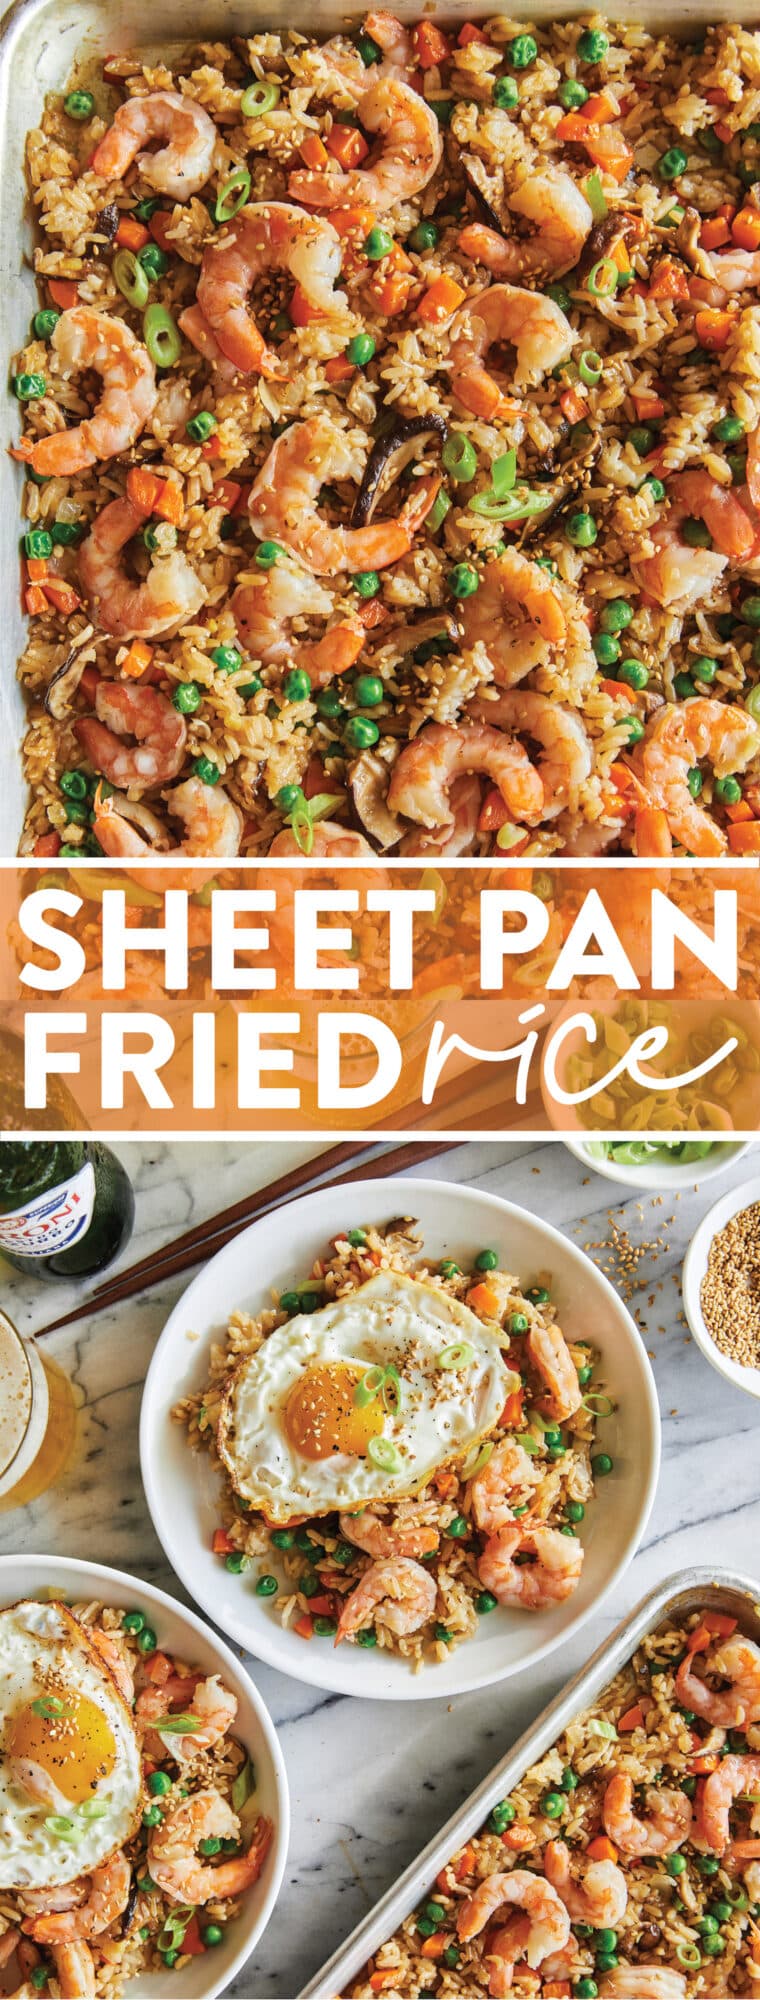 Pan Sheet Fried Rice: ¡Esta es una excelente manera de usar el arroz sobrante!  Y esta versión de bandeja es infalible con los bordes más crujientes.  MUY BIEN.